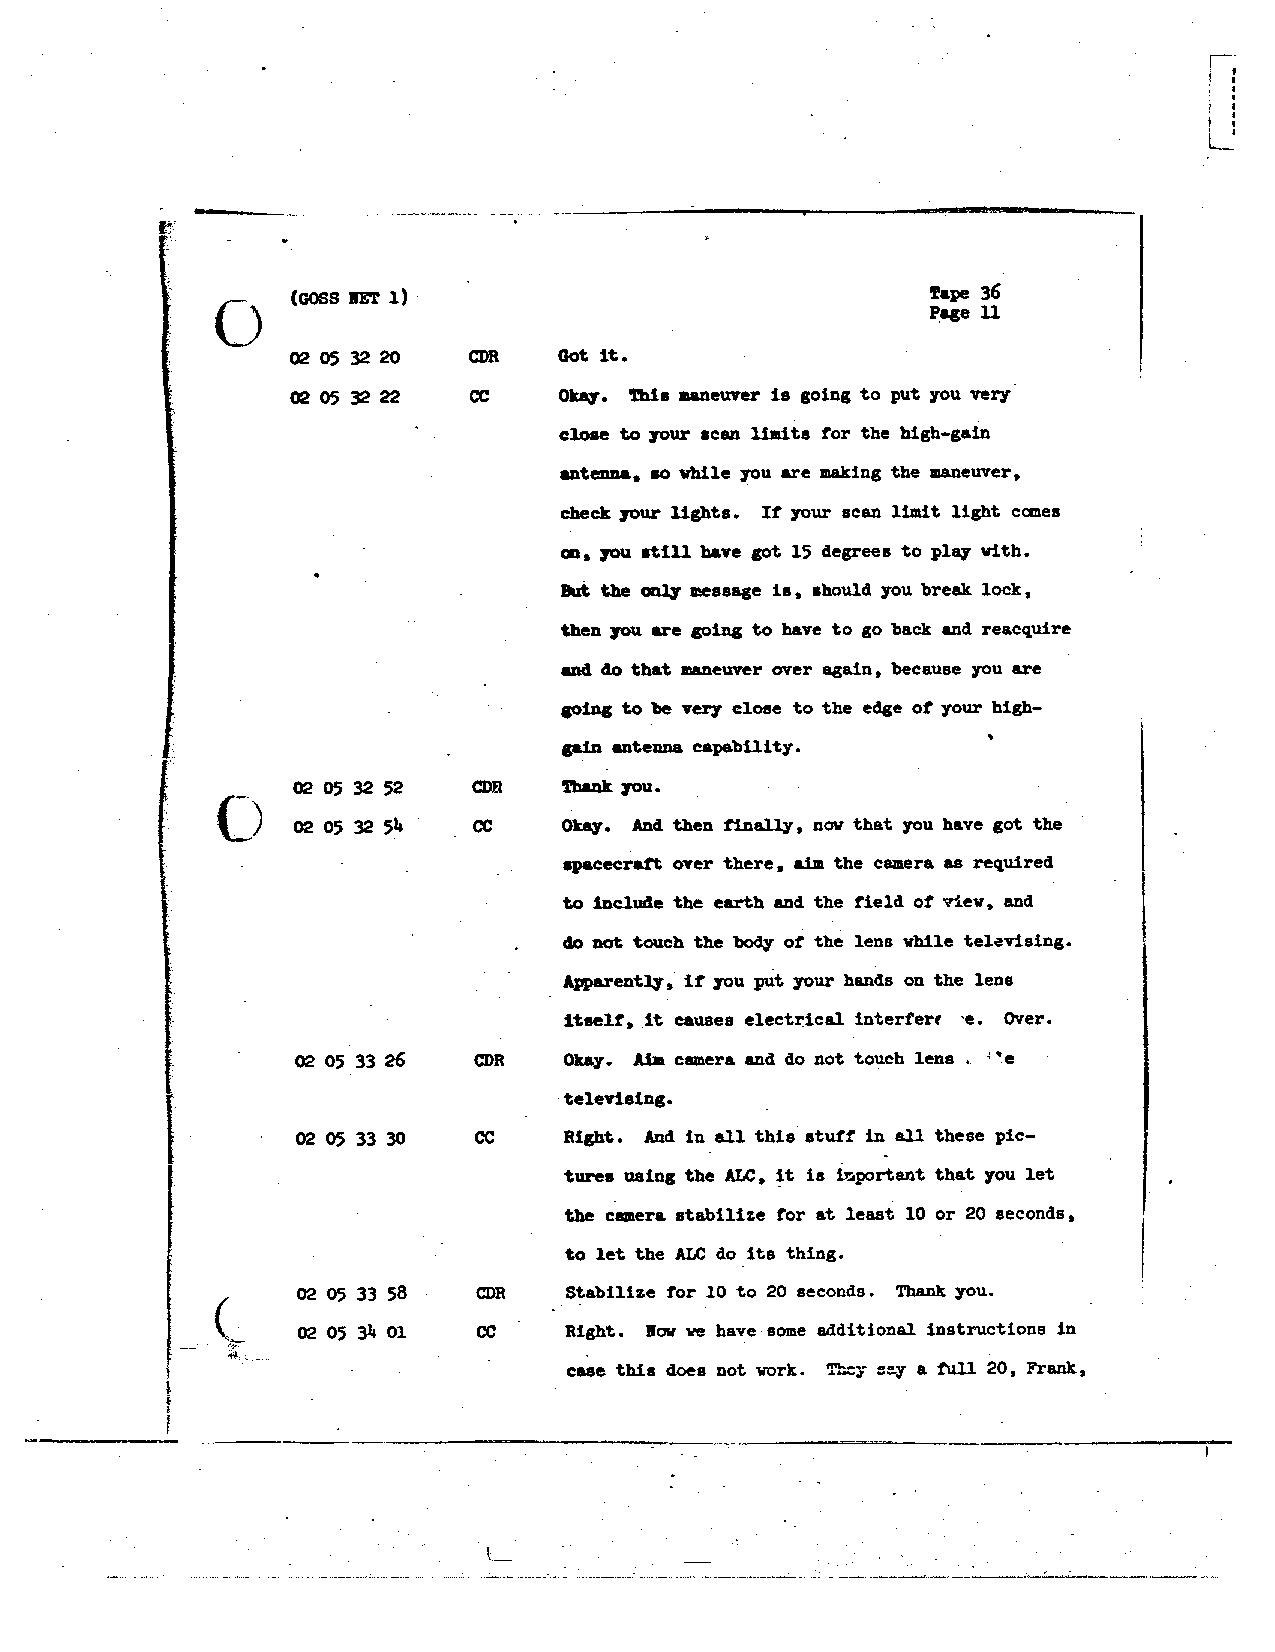 Page 281 of Apollo 8’s original transcript